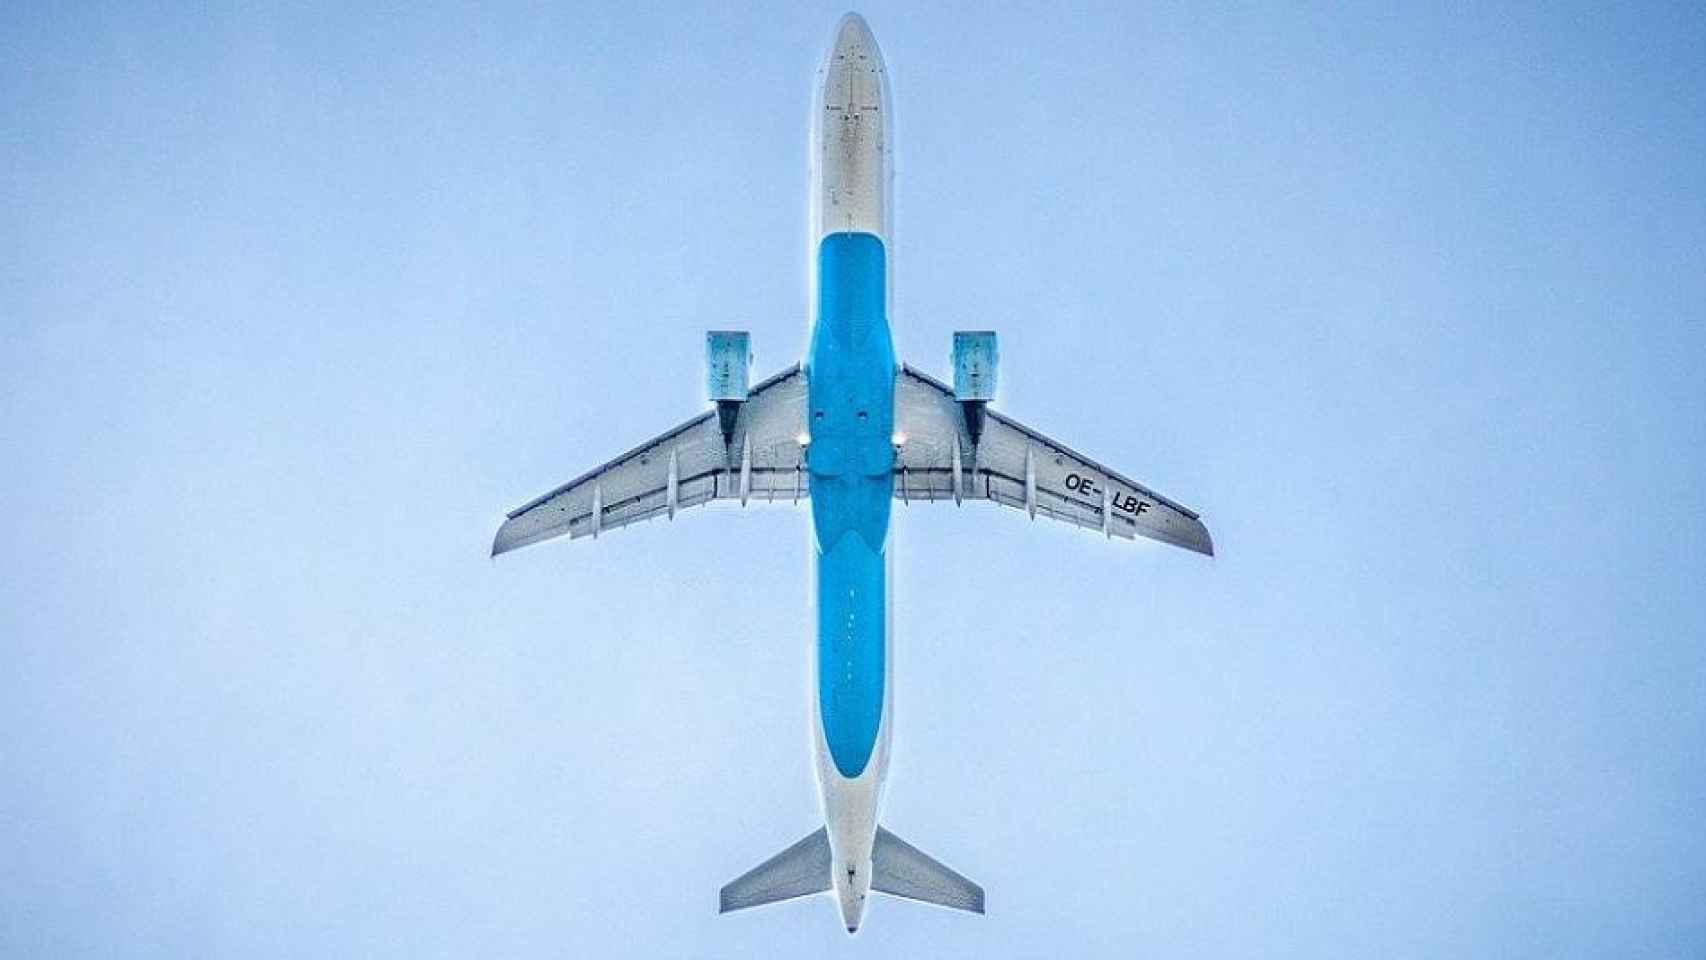 Un avión, clave para la recuperación del turismo que se verá en Fitur 2021 / Free-Photos EN PIXABAY